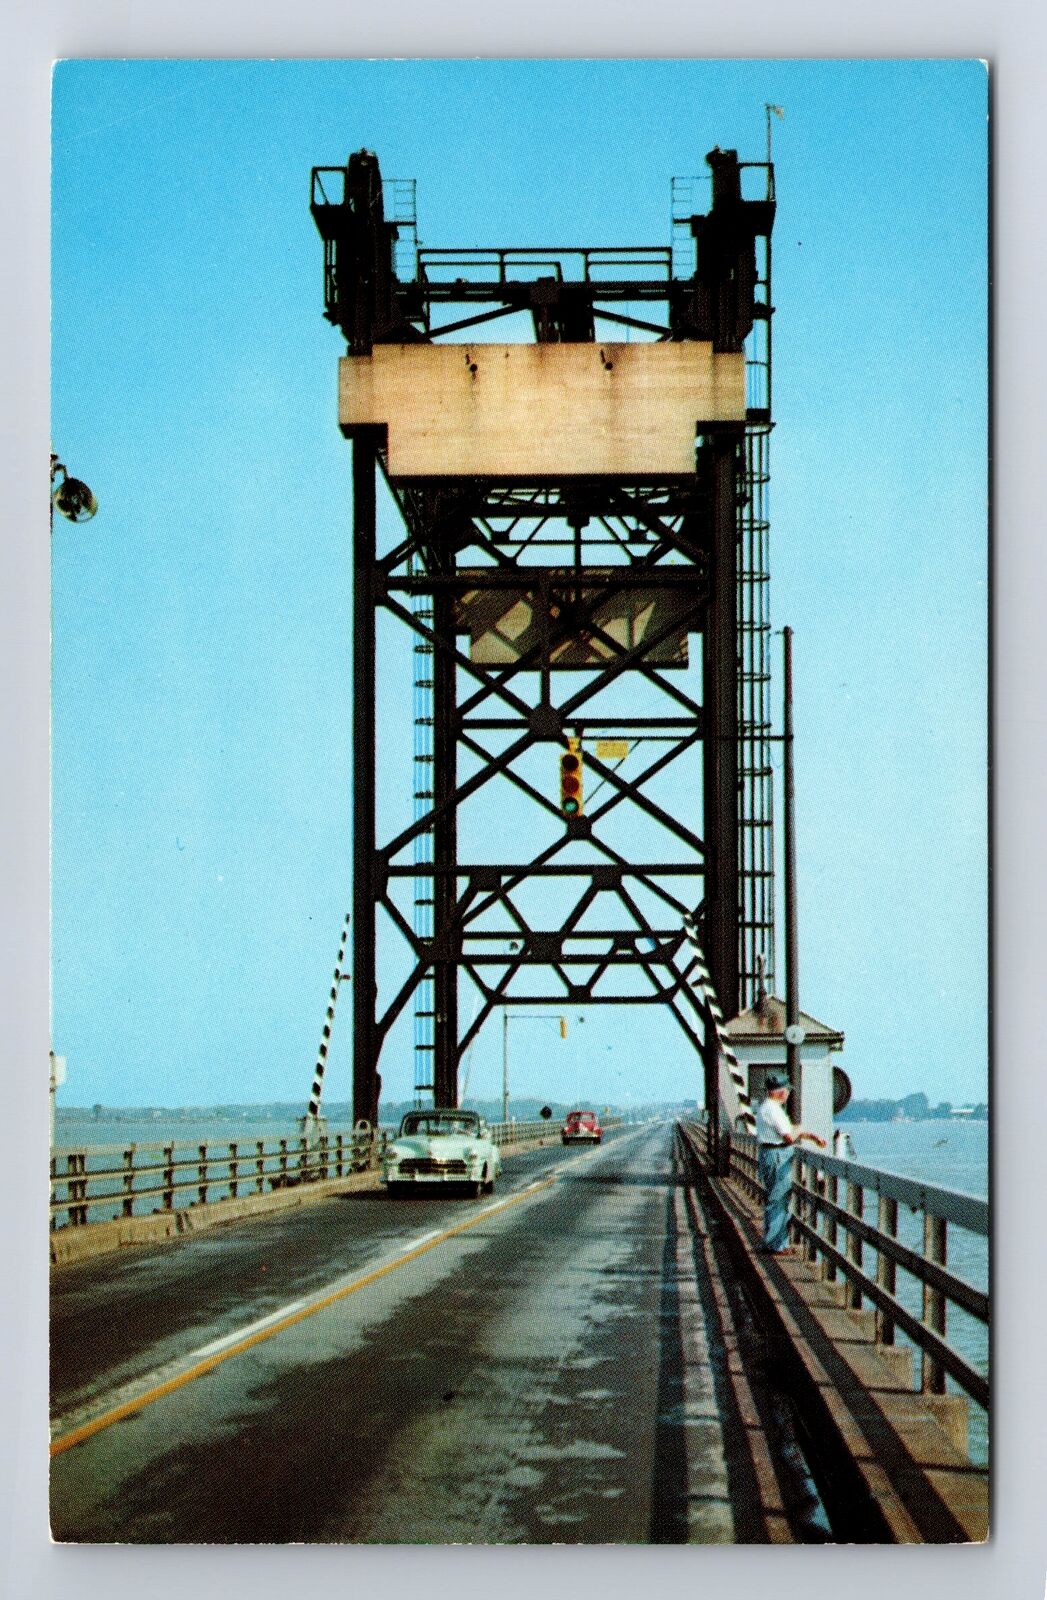 Marblehead Peninsula OH-Ohio, Sandusky Bay Bridge, Lake Erie, Vintage Postcard